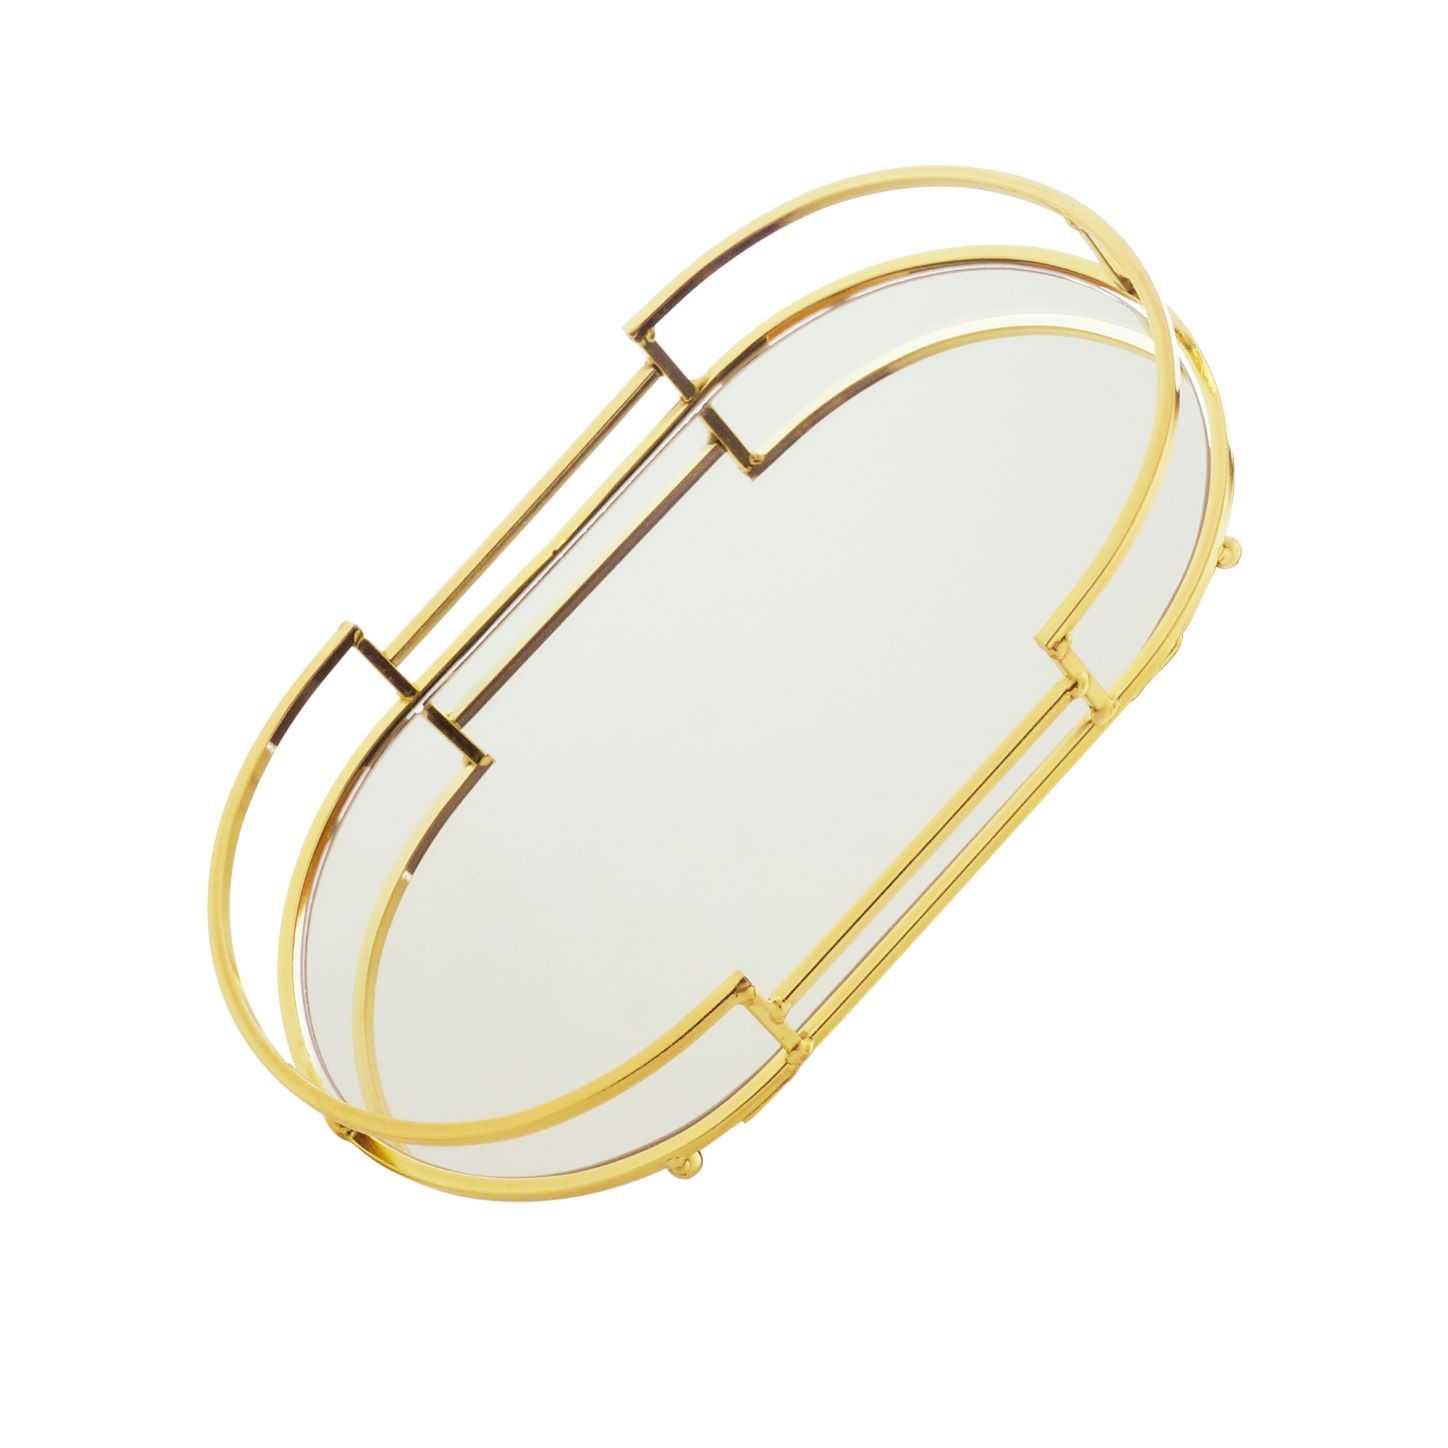 Bandeja Decorativa Oval com Espelho 26x16cm - Dourada